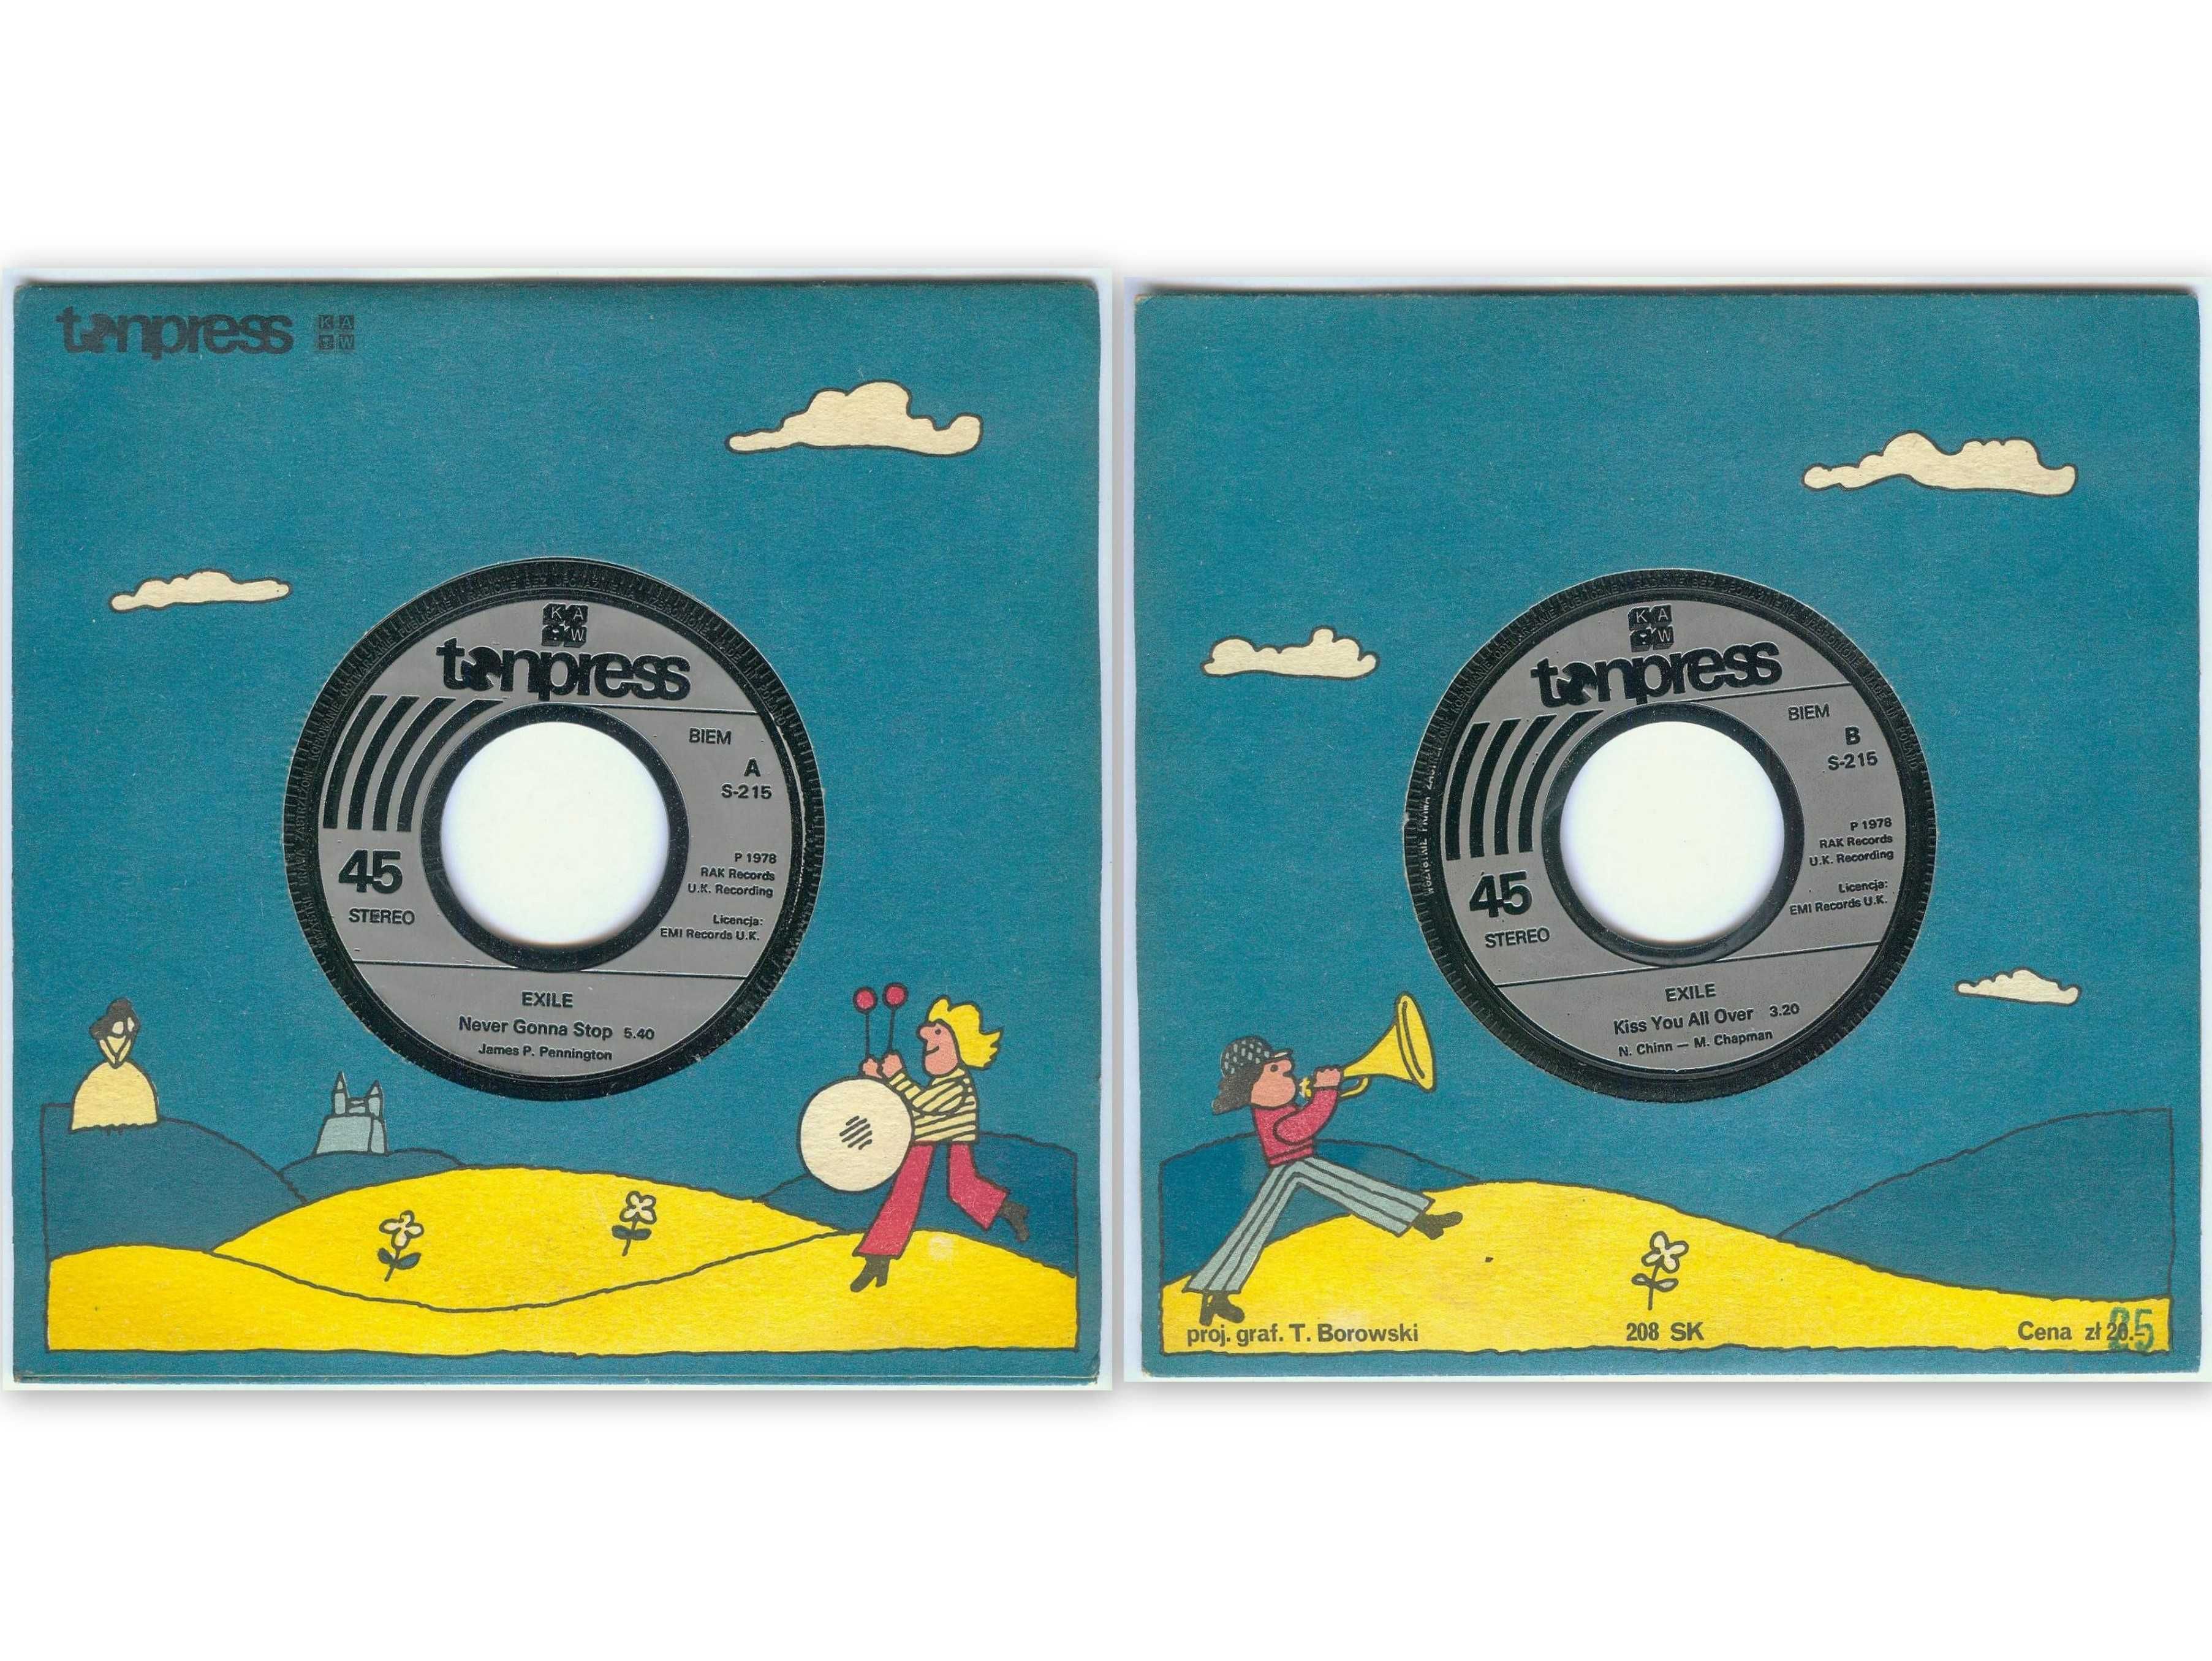 Płyta winylowa 7" (mała) - EXILE - Tonpress S-215  wyd. 1978 r.